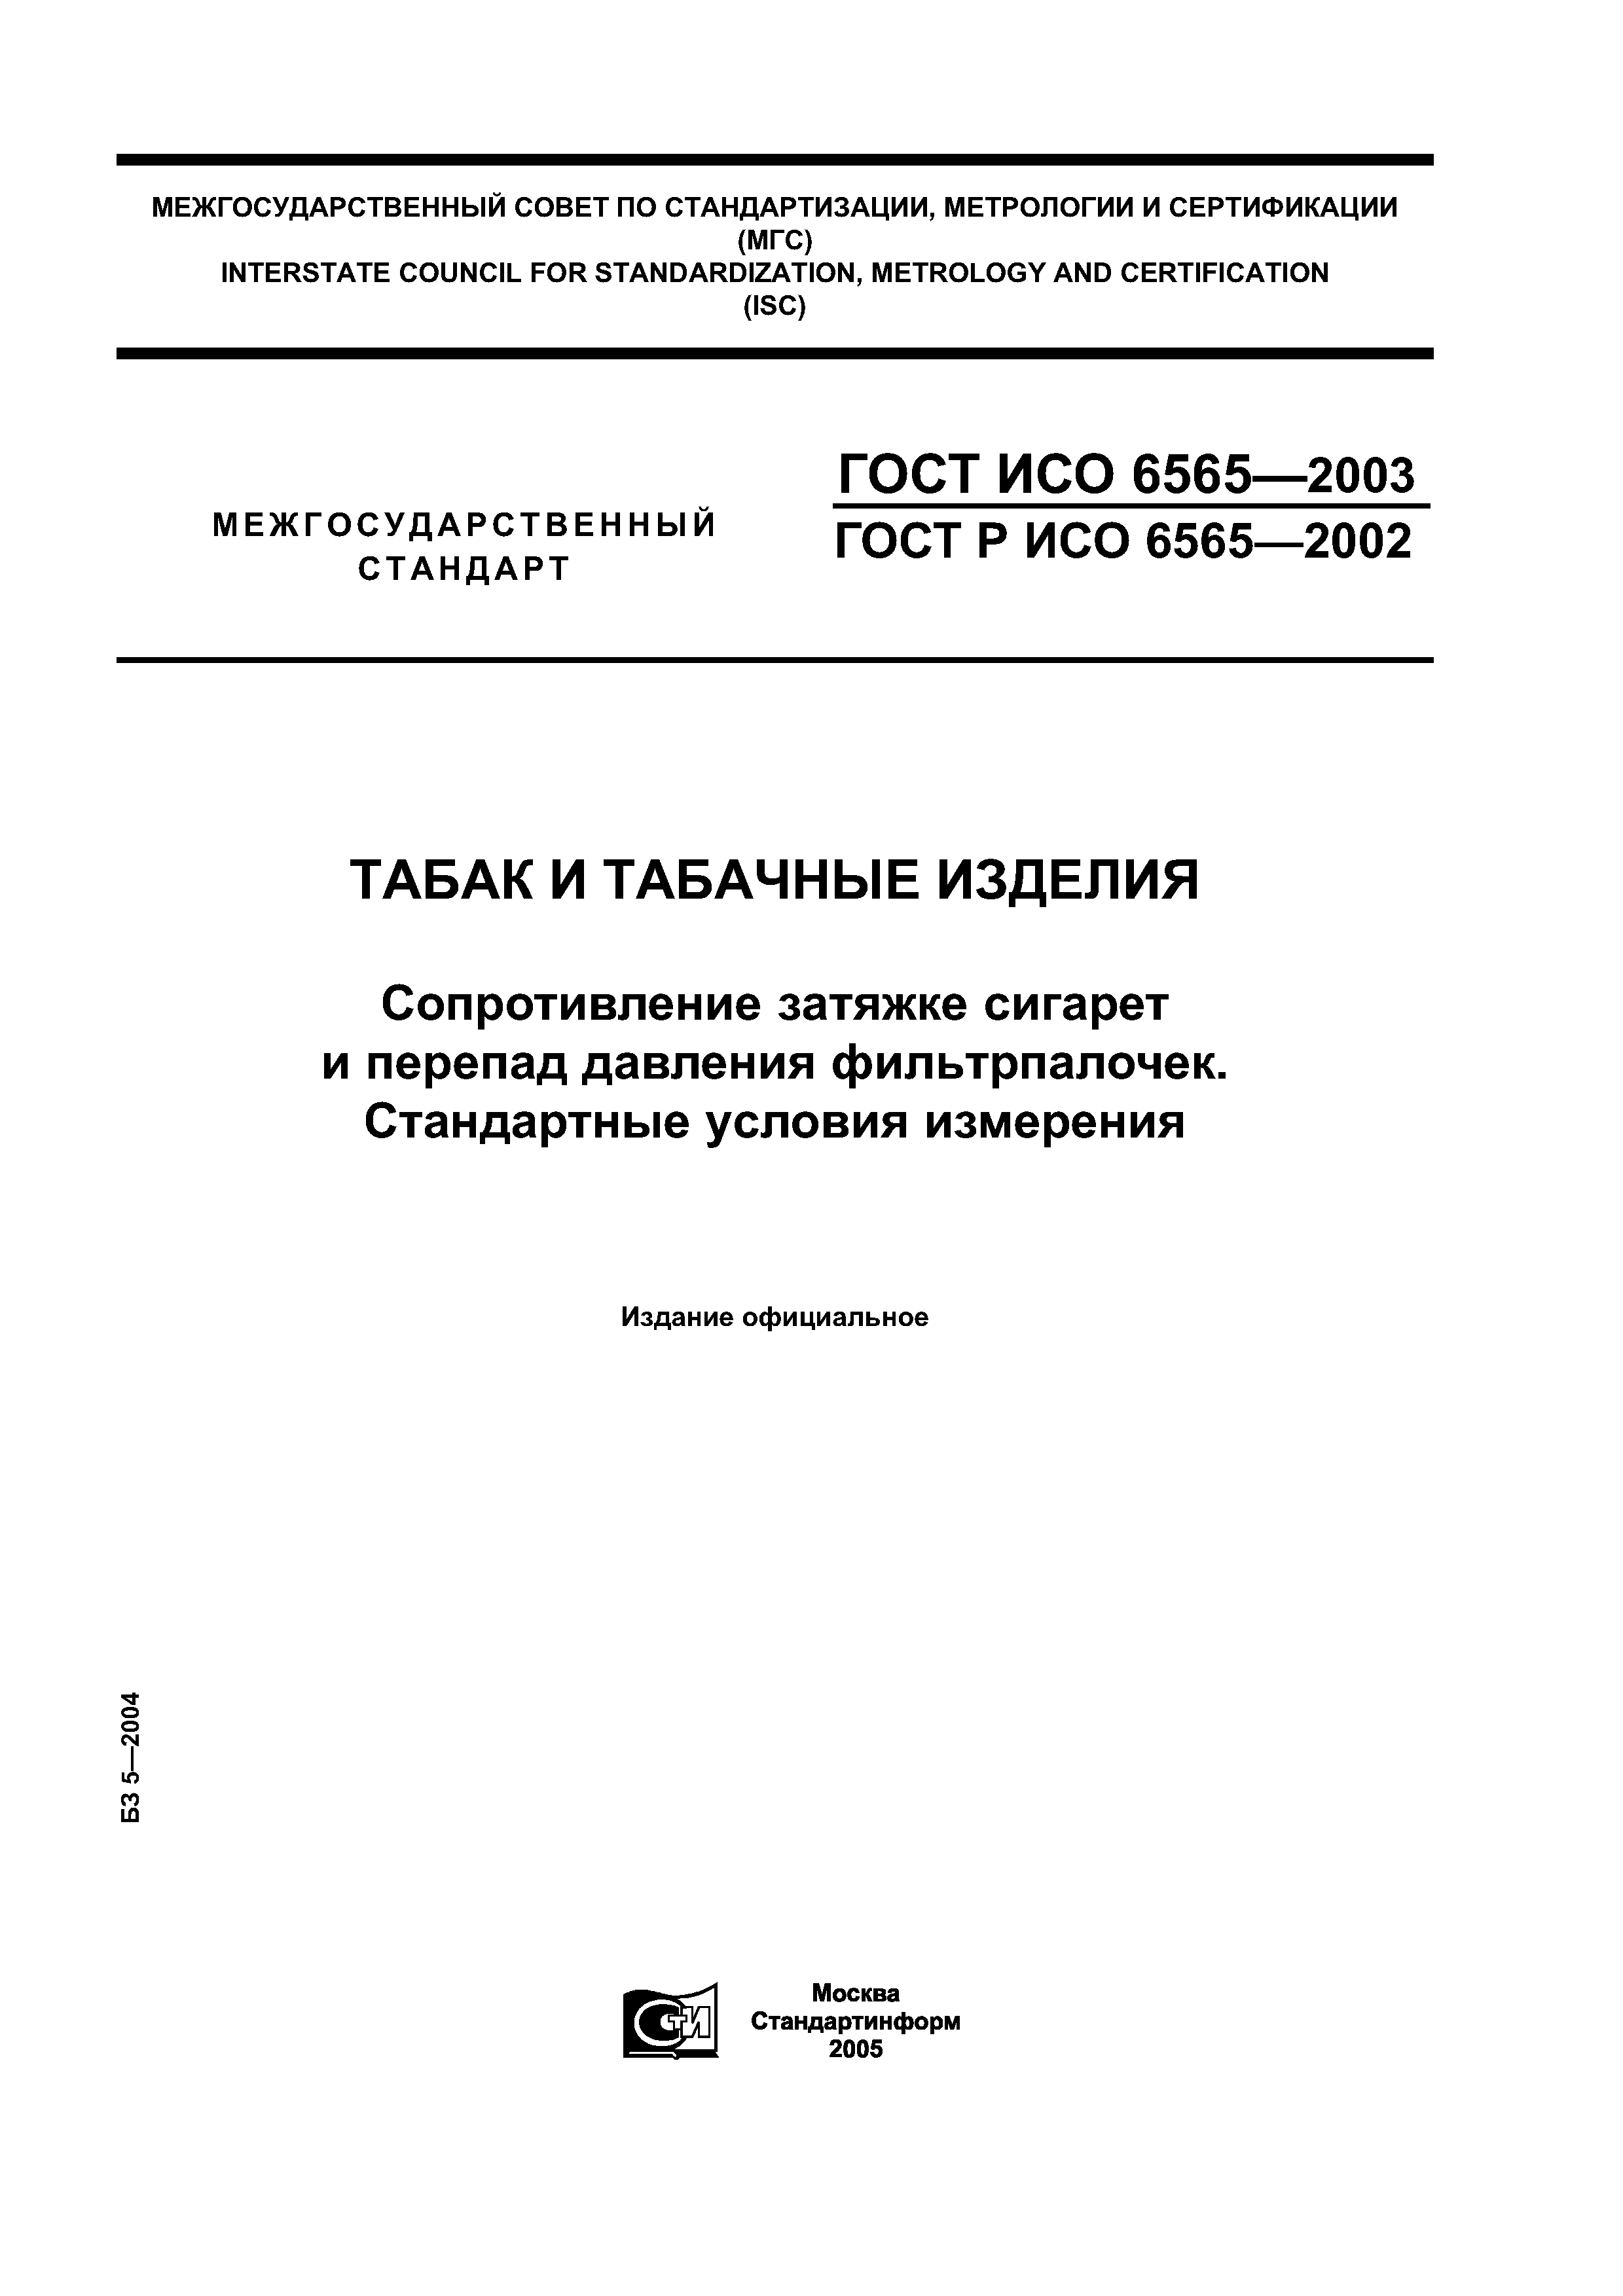 ГОСТ ИСО 6565-2003